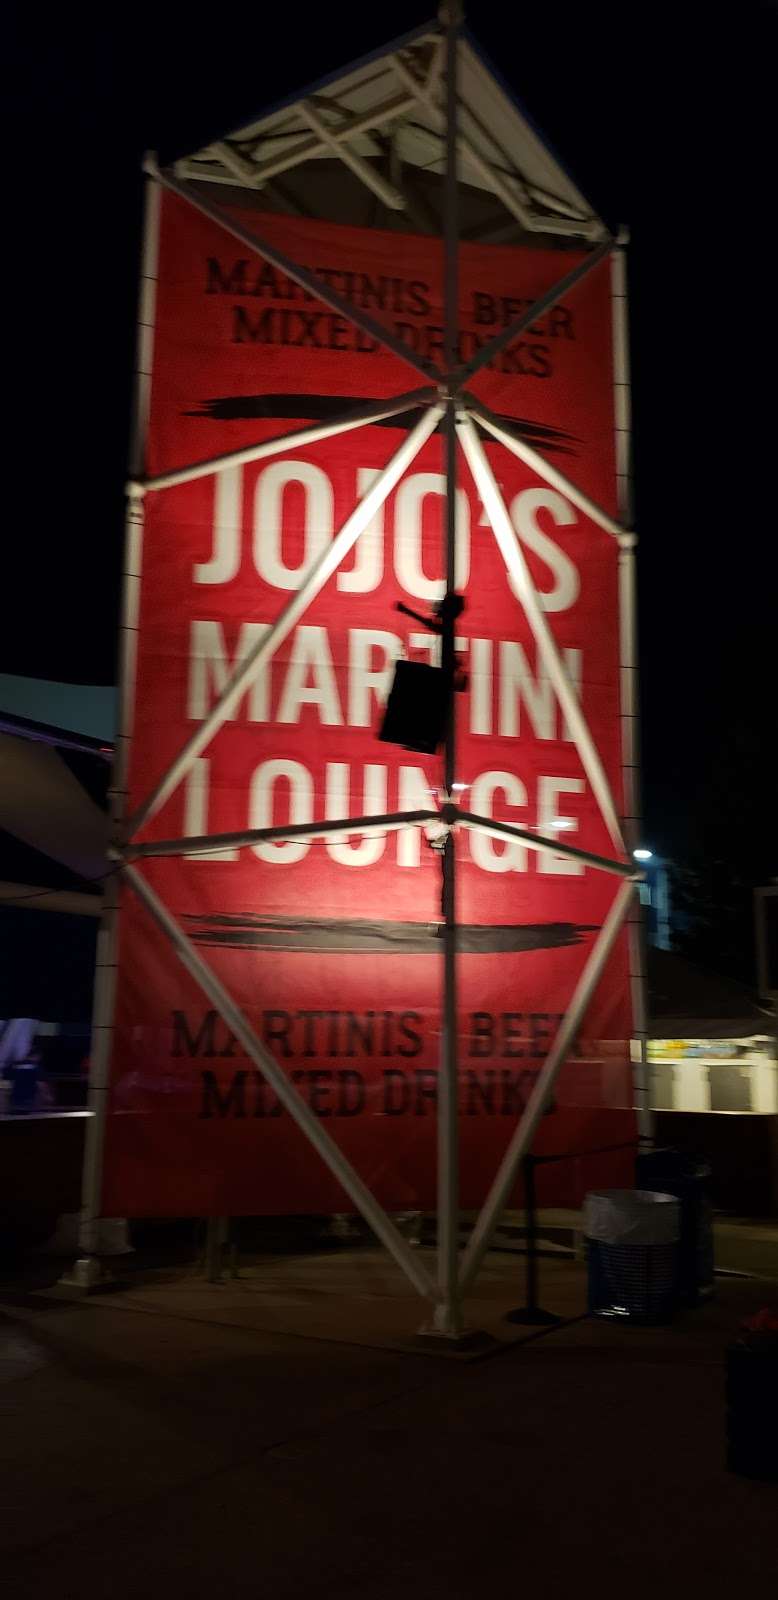 JoJos Martini Lounge | 200 N Harbor Dr, Milwaukee, WI 53202, USA